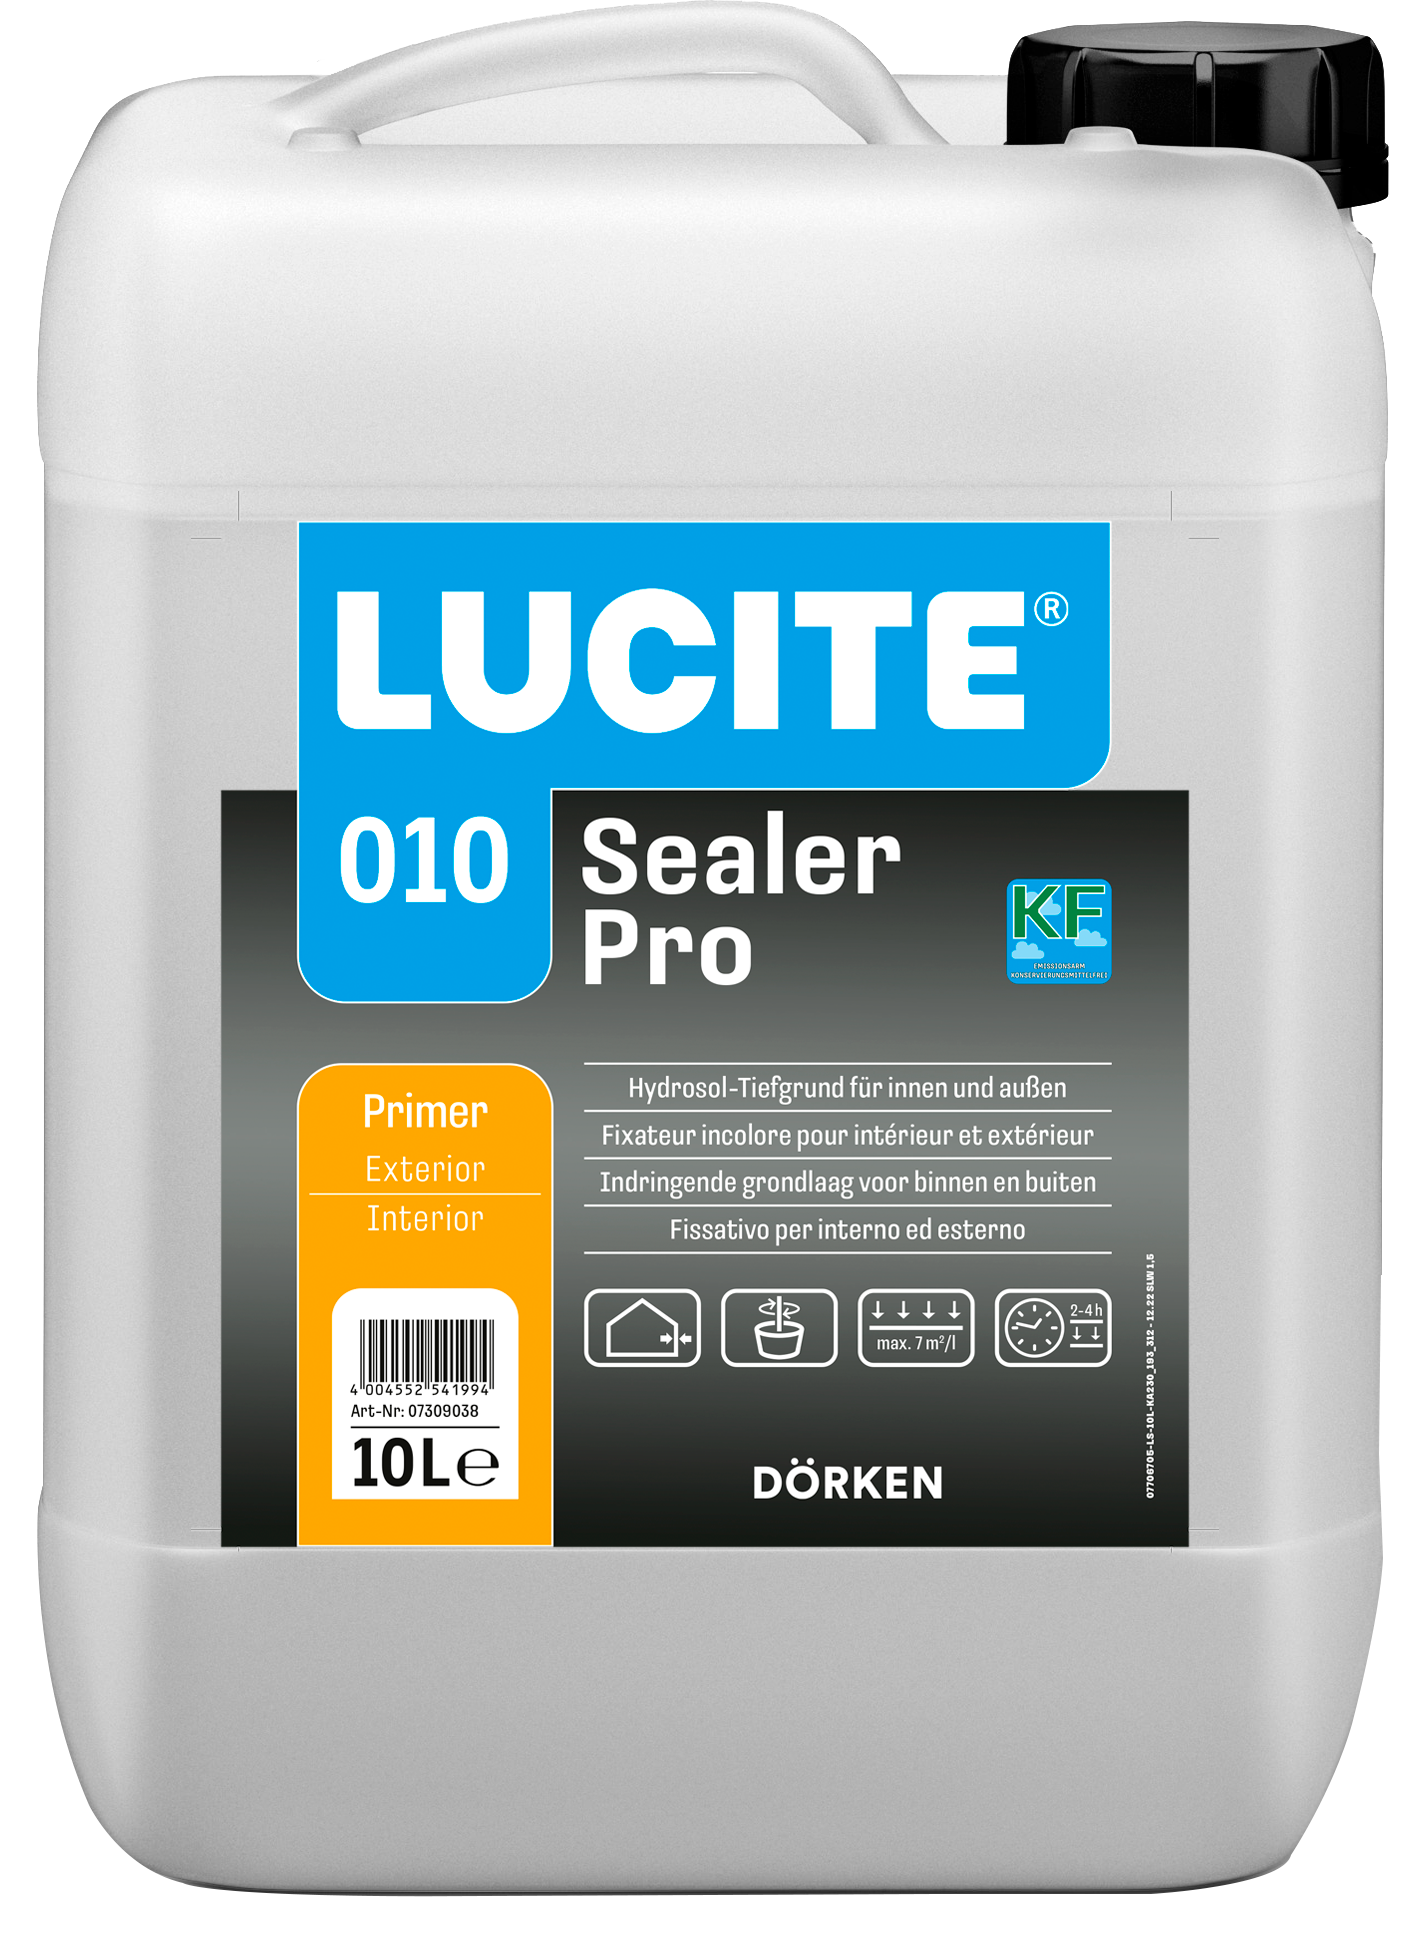 LUCITE® 010 Sealer Pro